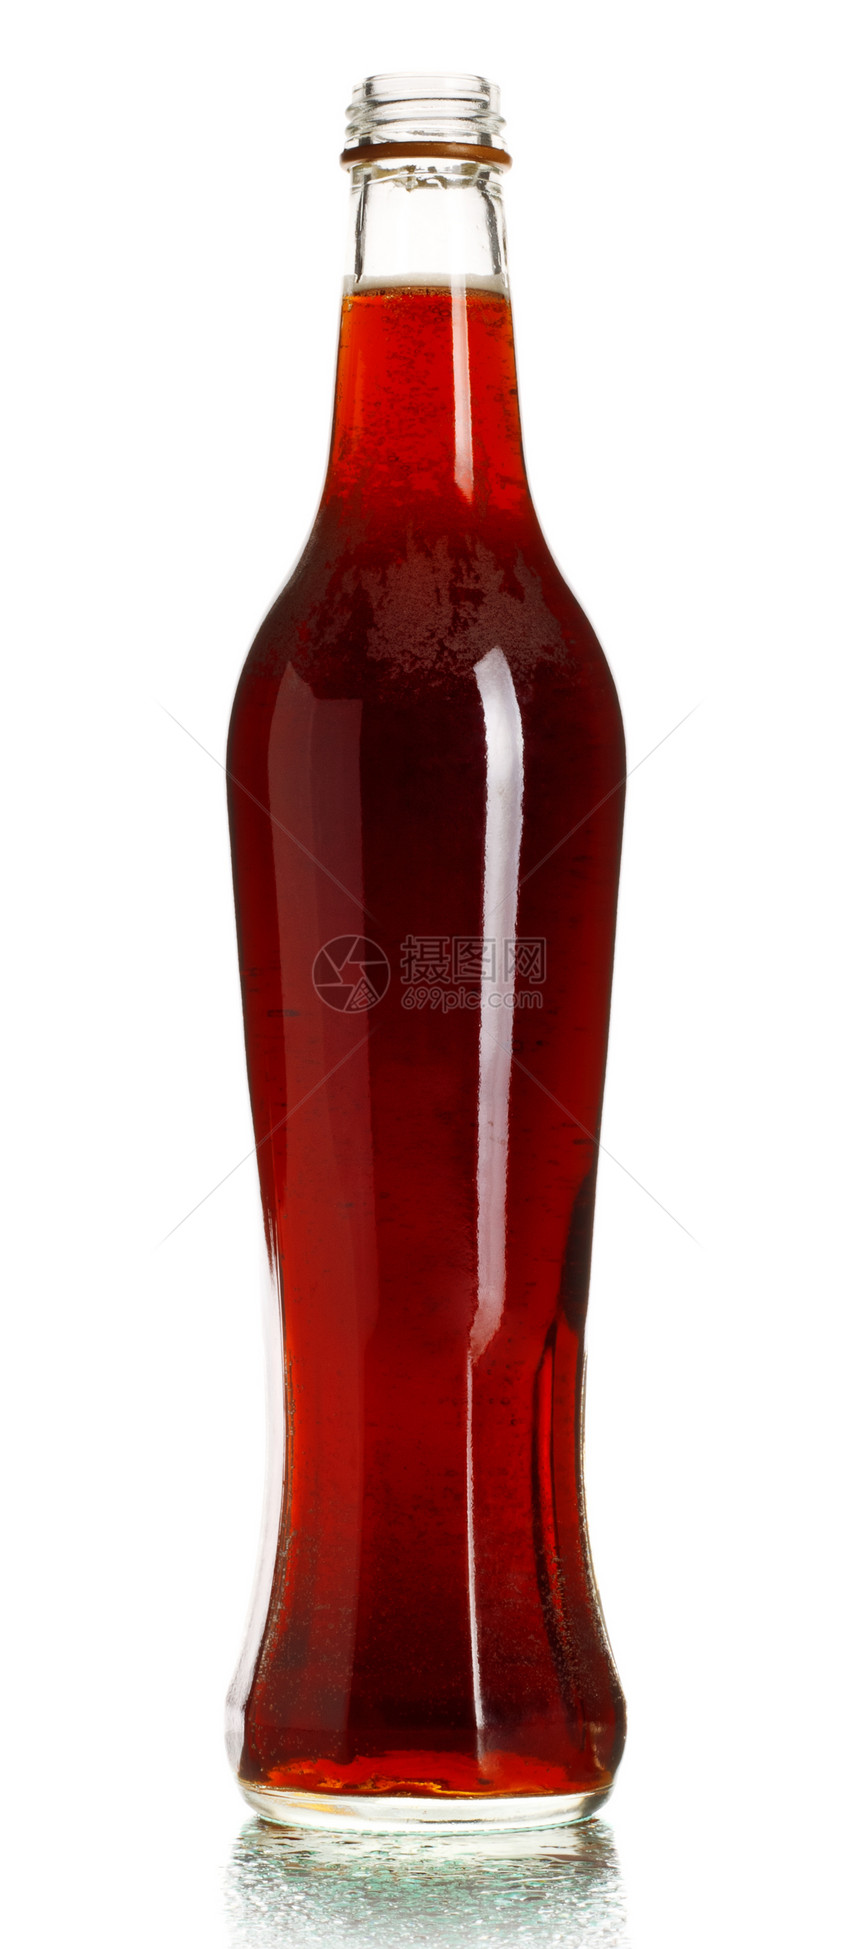 可口可乐瓶冷藏冰镇流行音乐气泡二氧化碳器皿立方体照片瓶子嘶嘶图片